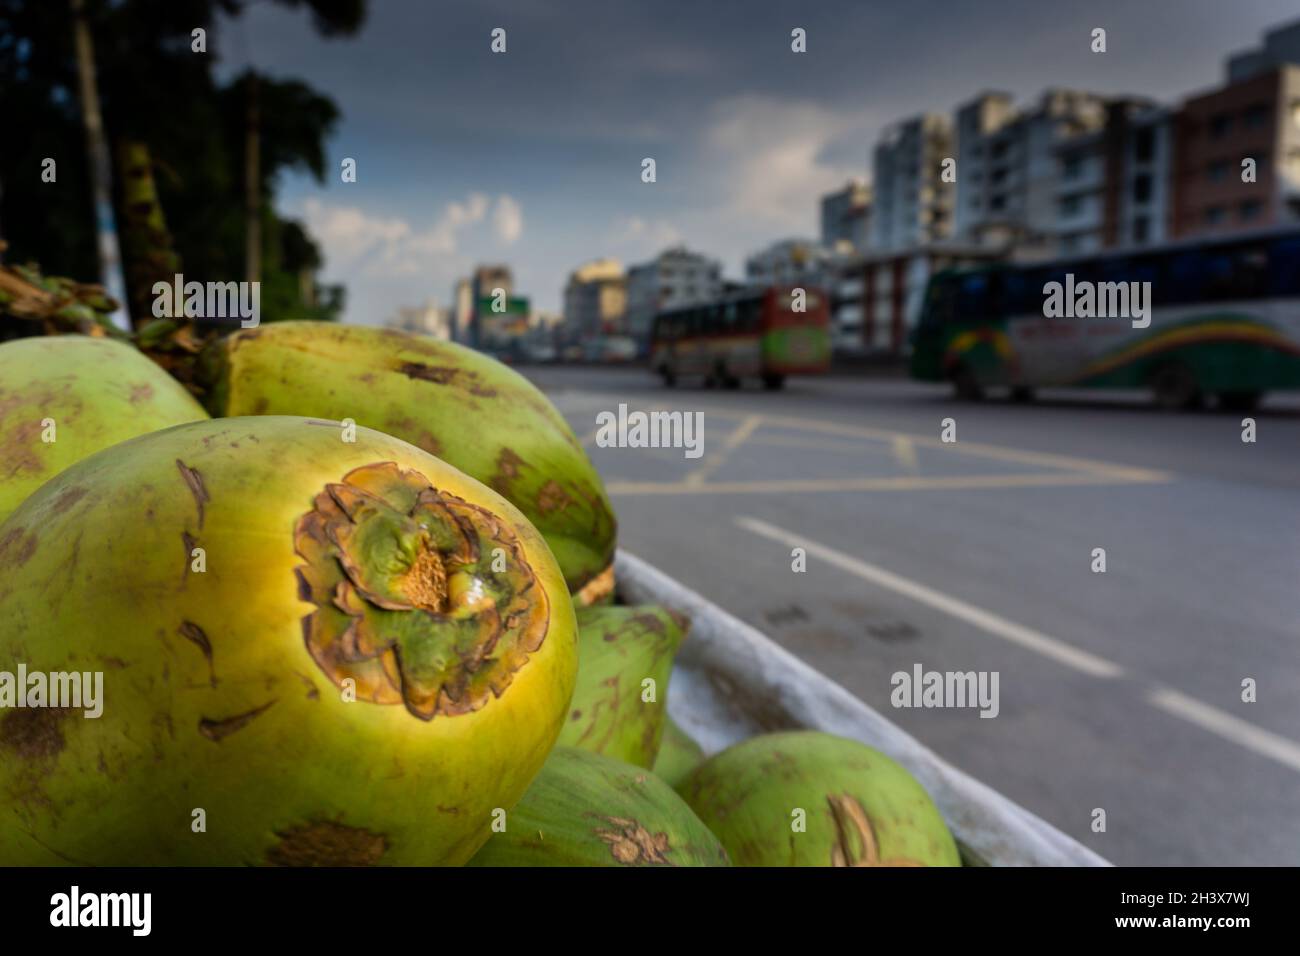 Kokosnuss ist ein beliebtes natürliches Getränk in Bangladesch. Bilder auf Straßen der Stadt. Stockfoto